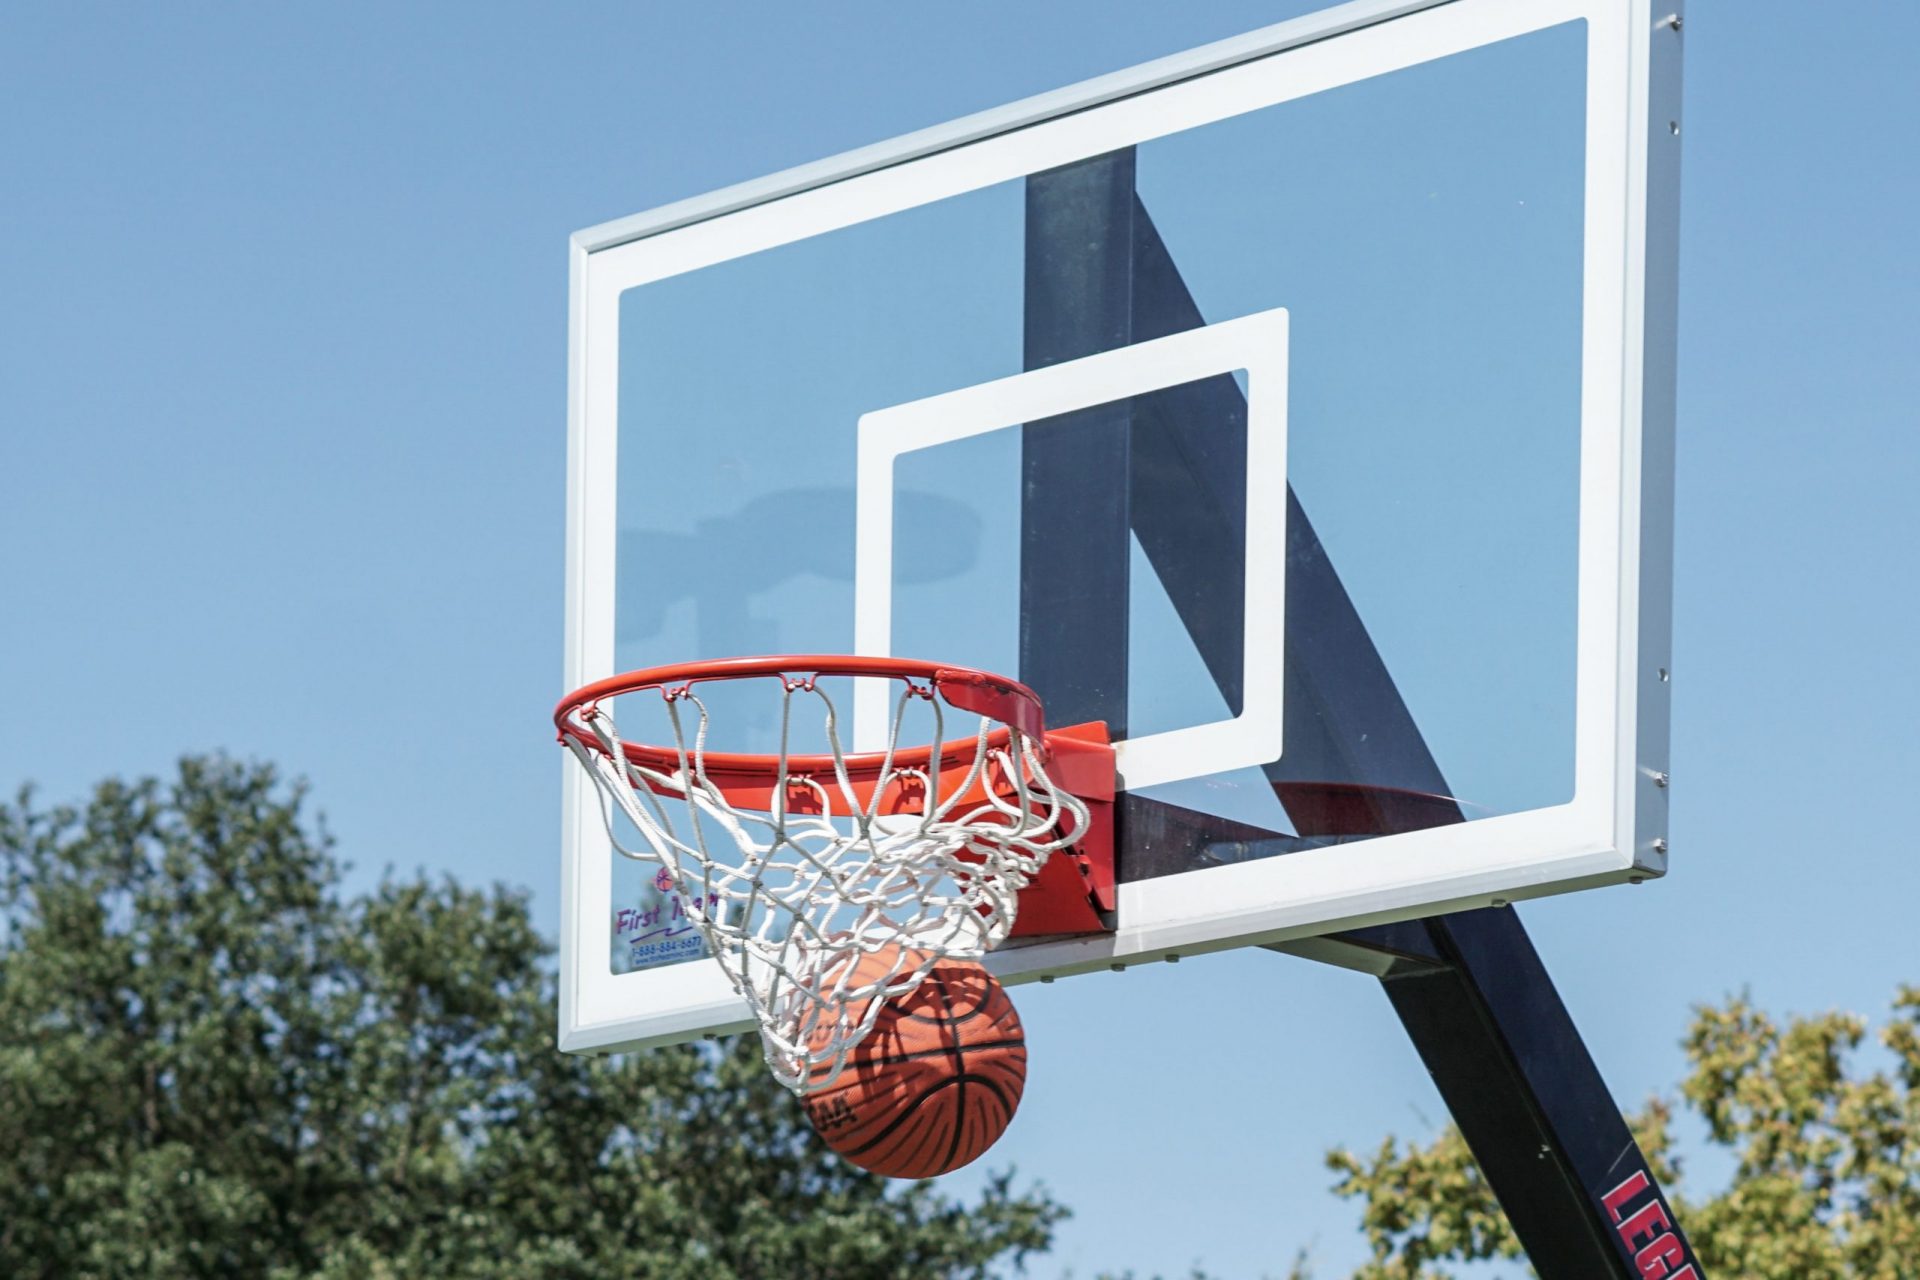 Best Spalding Basketball Hoops to Buy in 2022